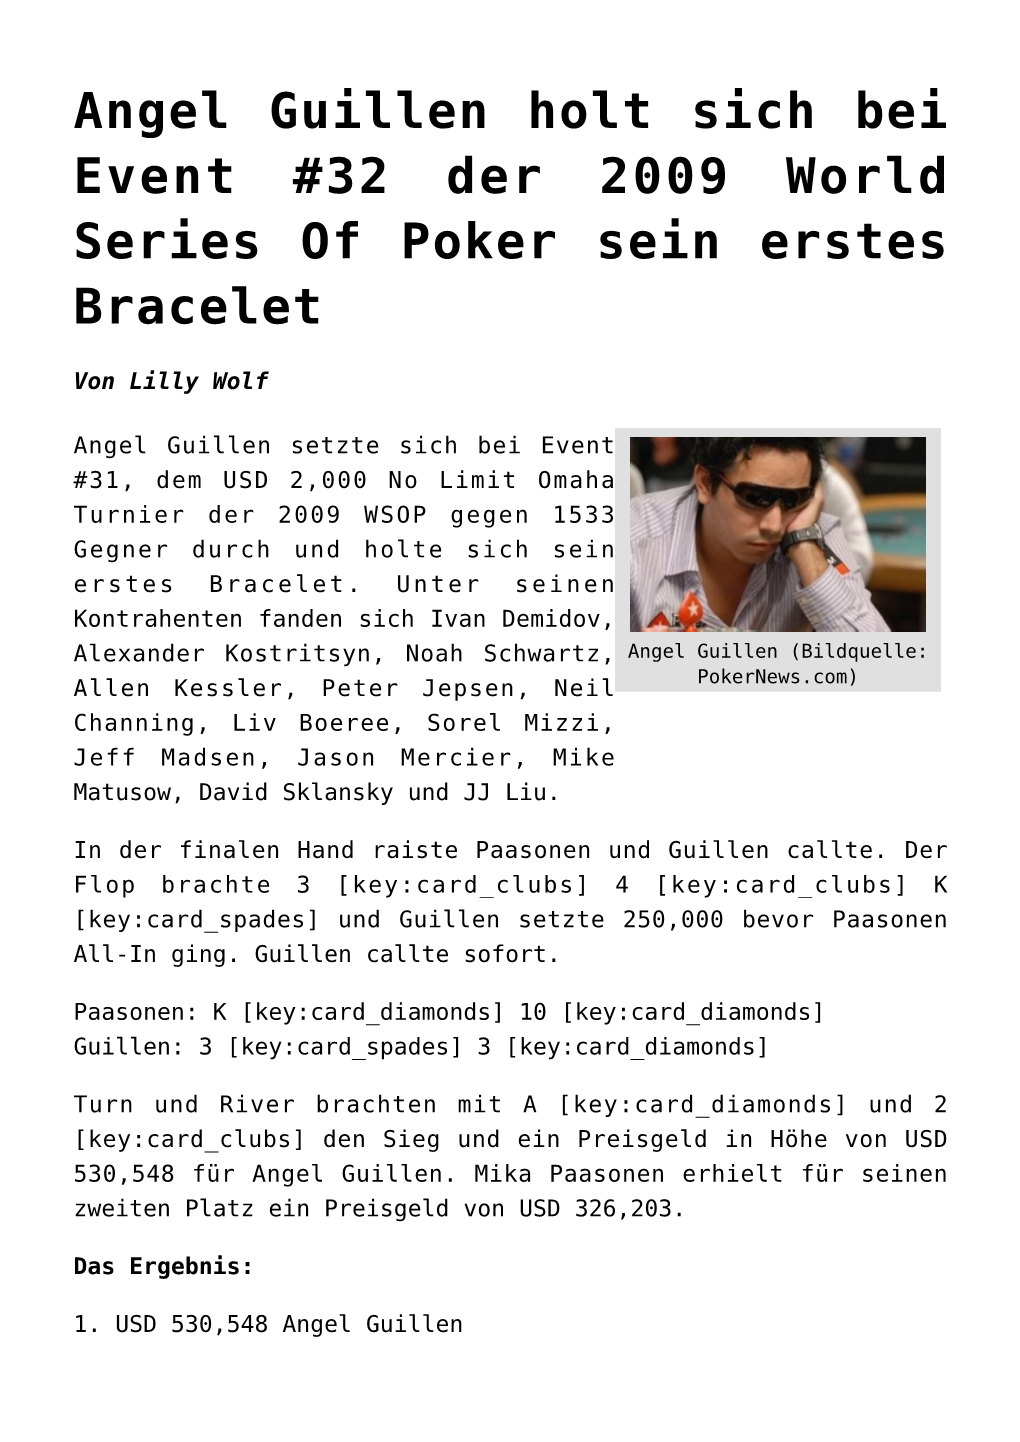 Angel Guillen Holt Sich Bei Event #32 Der 2009 World Series of Poker Sein Erstes Bracelet